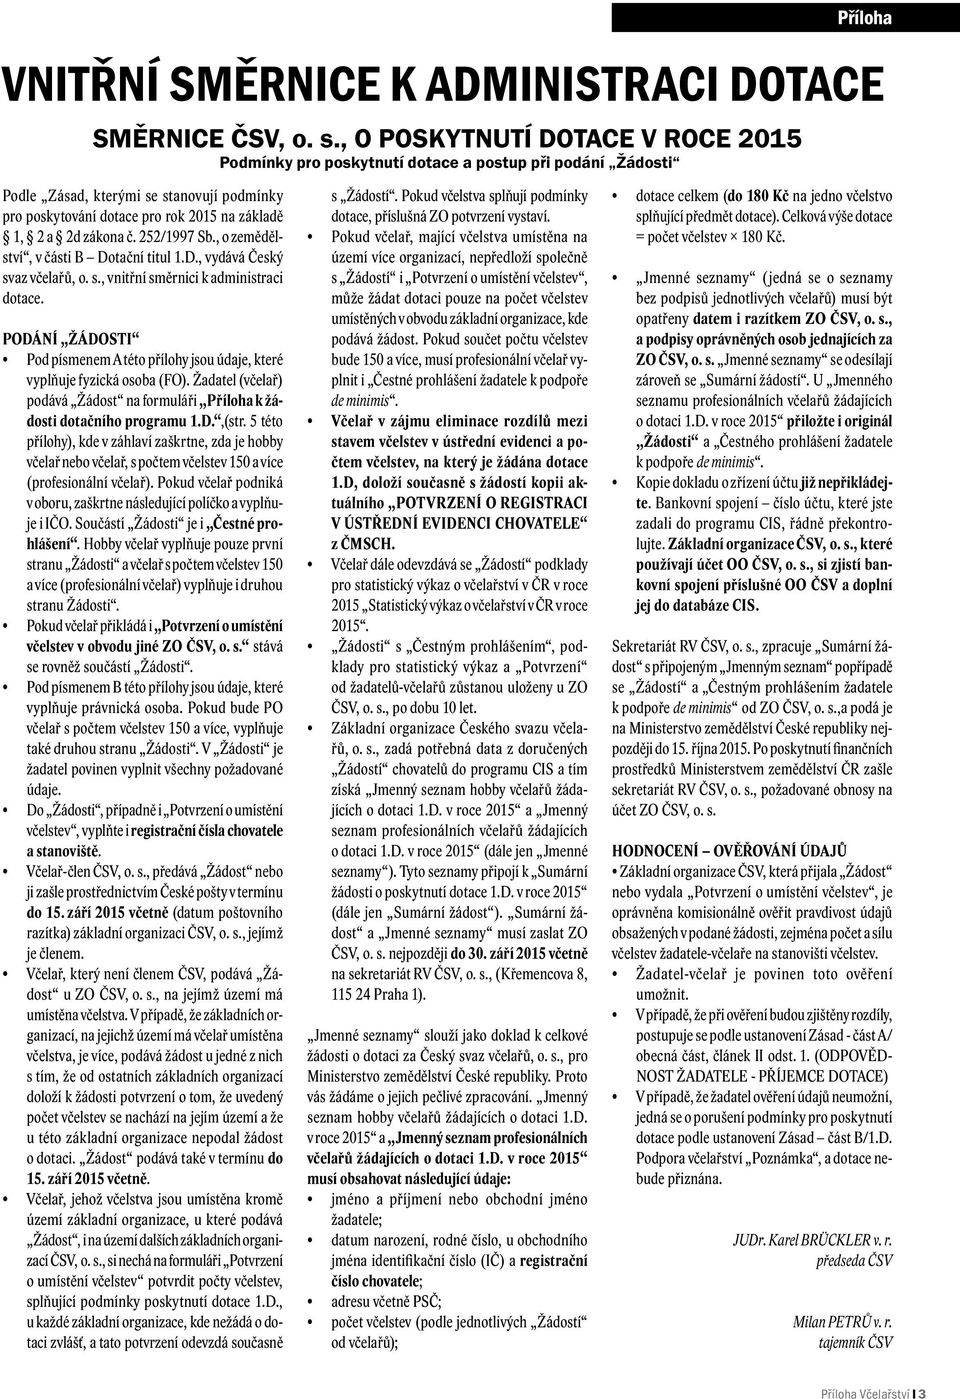 č. 252/1997 Sb., o zemědělství, v části B Dotační titul 1.D., vydává Český svaz včelařů, o. s., vnitřní směrnici k administraci dotace.